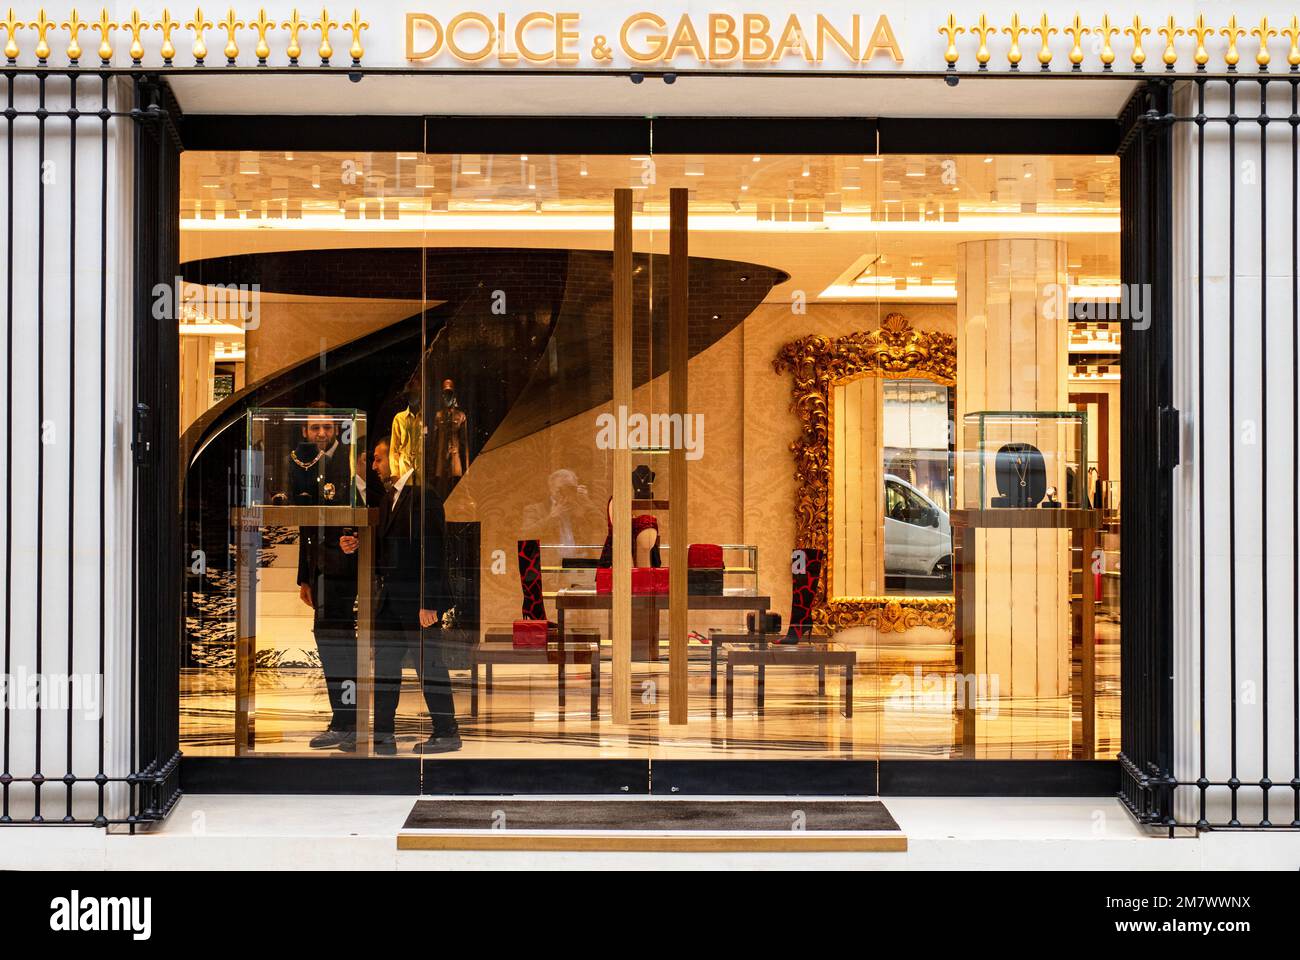 Dolce und Gabbana Schaufenster/visuelles Merchandising des Bond Street Ladens, ein gehobenes, wohlhabendes, gehobenes Luxusunternehmen Stockfoto